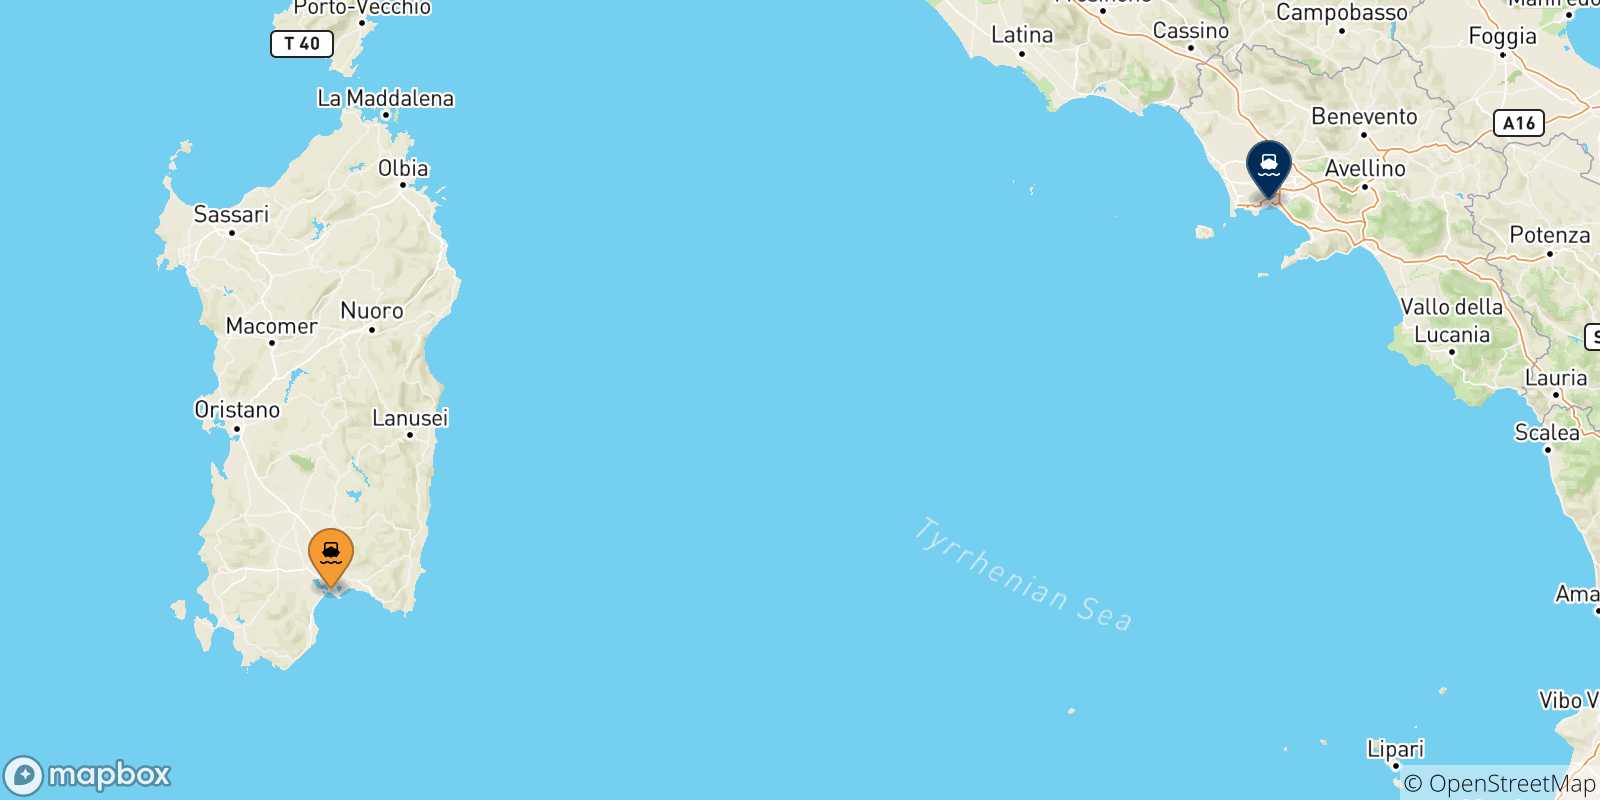 Mappa delle possibili rotte tra la Sardegna e Napoli